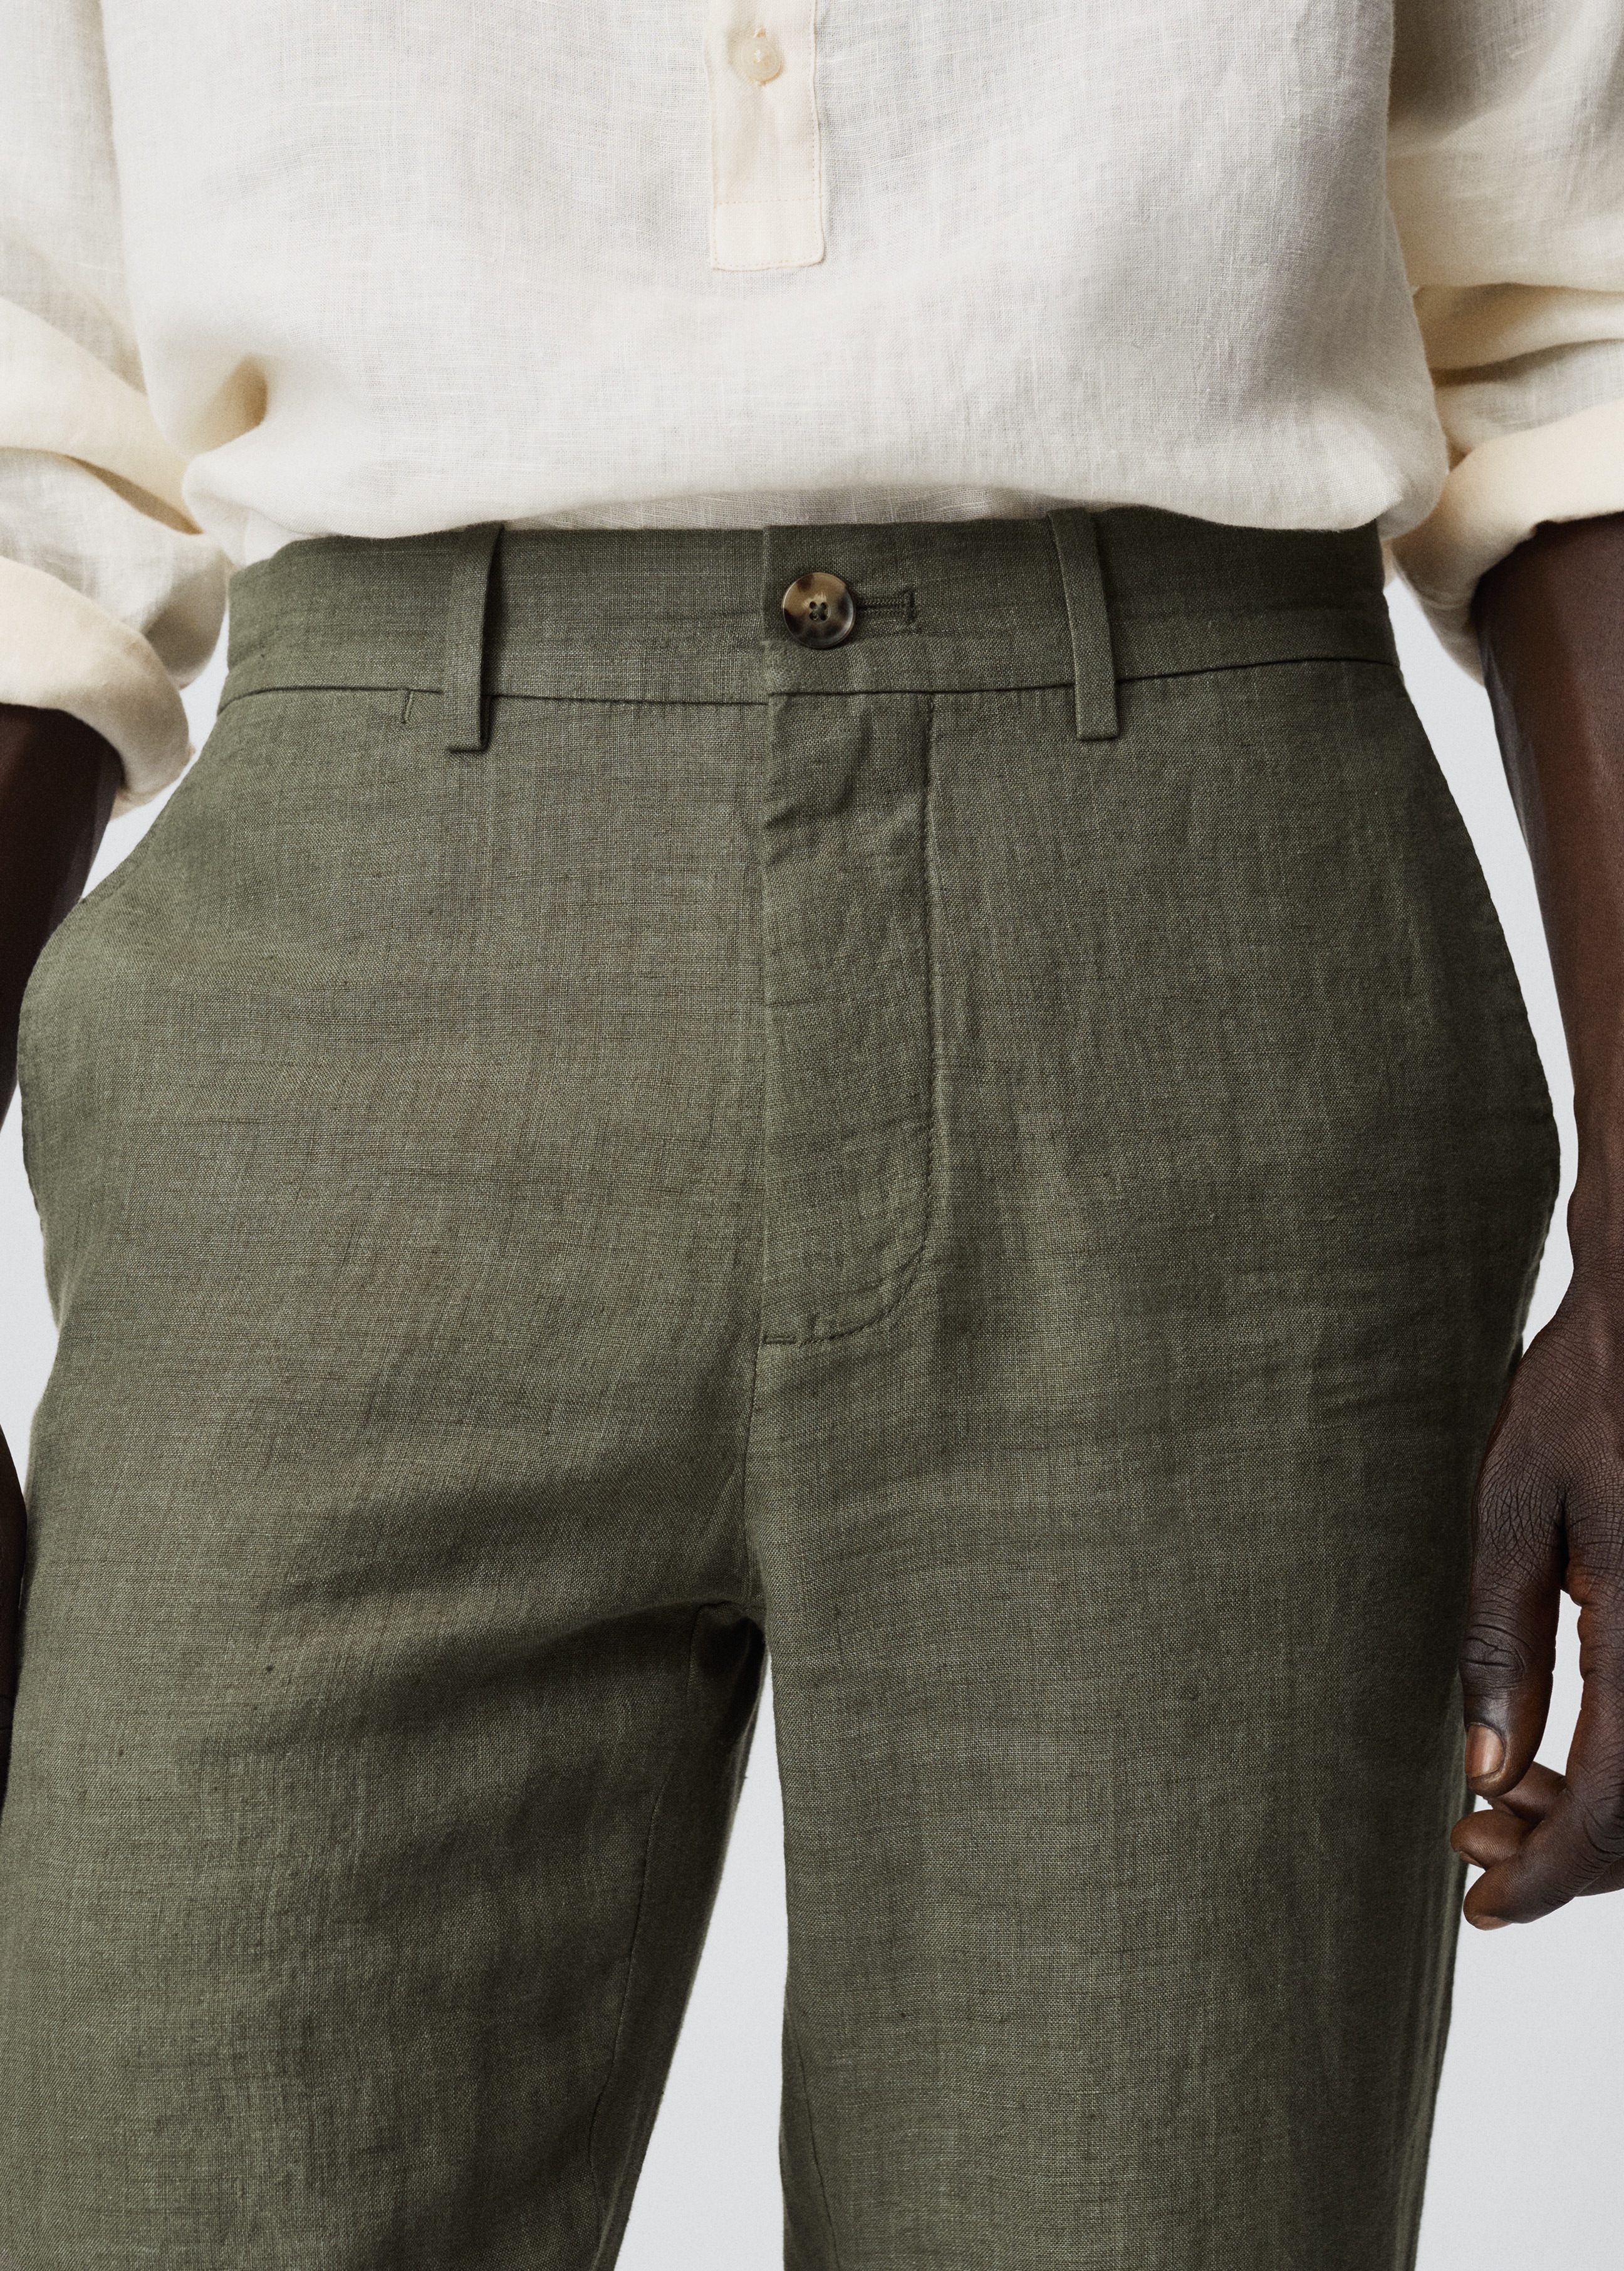 Pantalón lino slim fit - Detalle del artículo 1